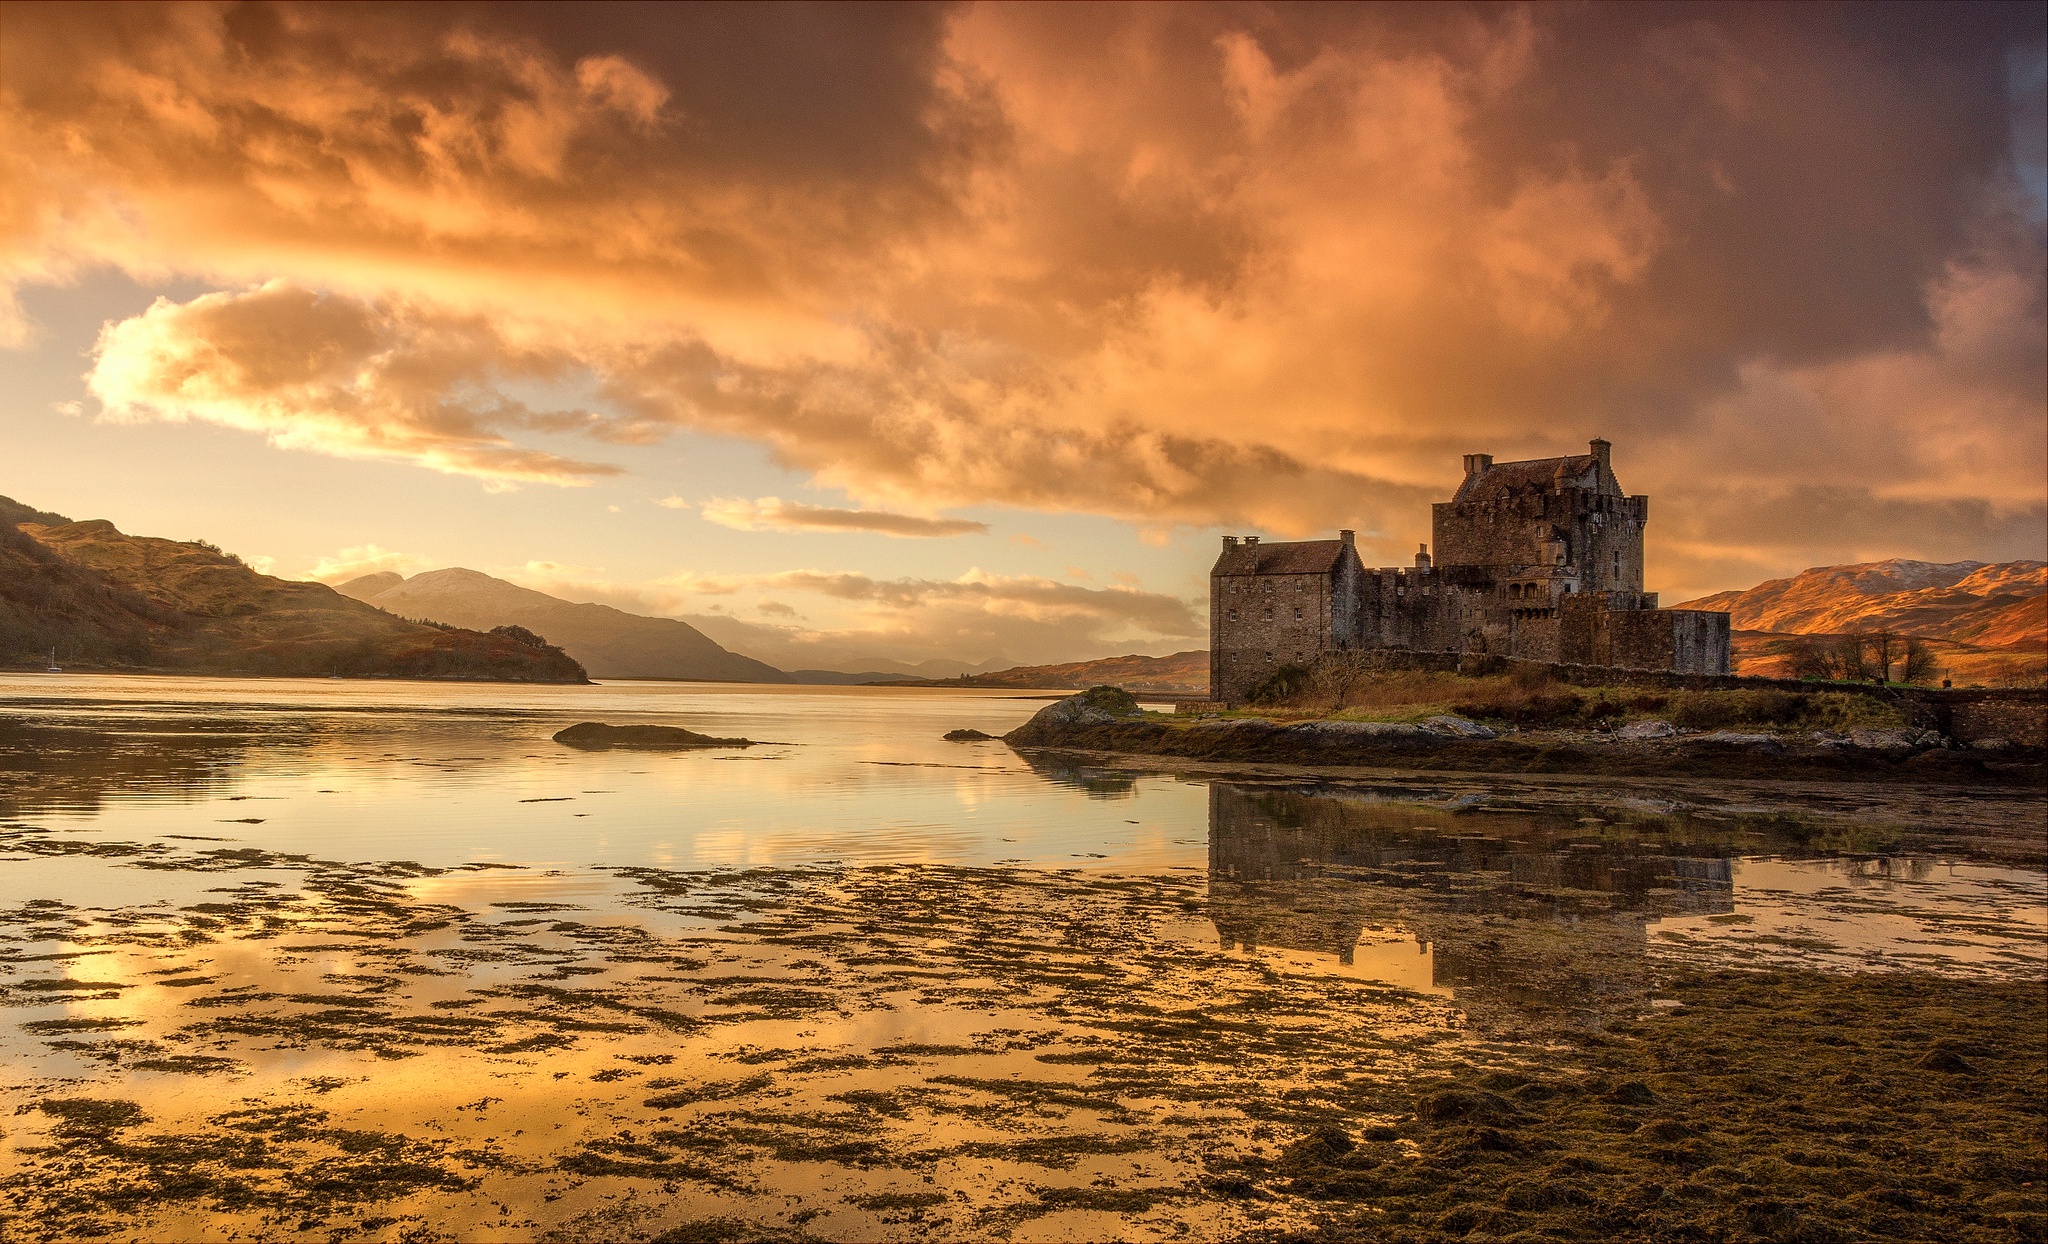 man made, eilean donan castle, building, castle, cloud, lake, landscape, reflection, scotland, castles